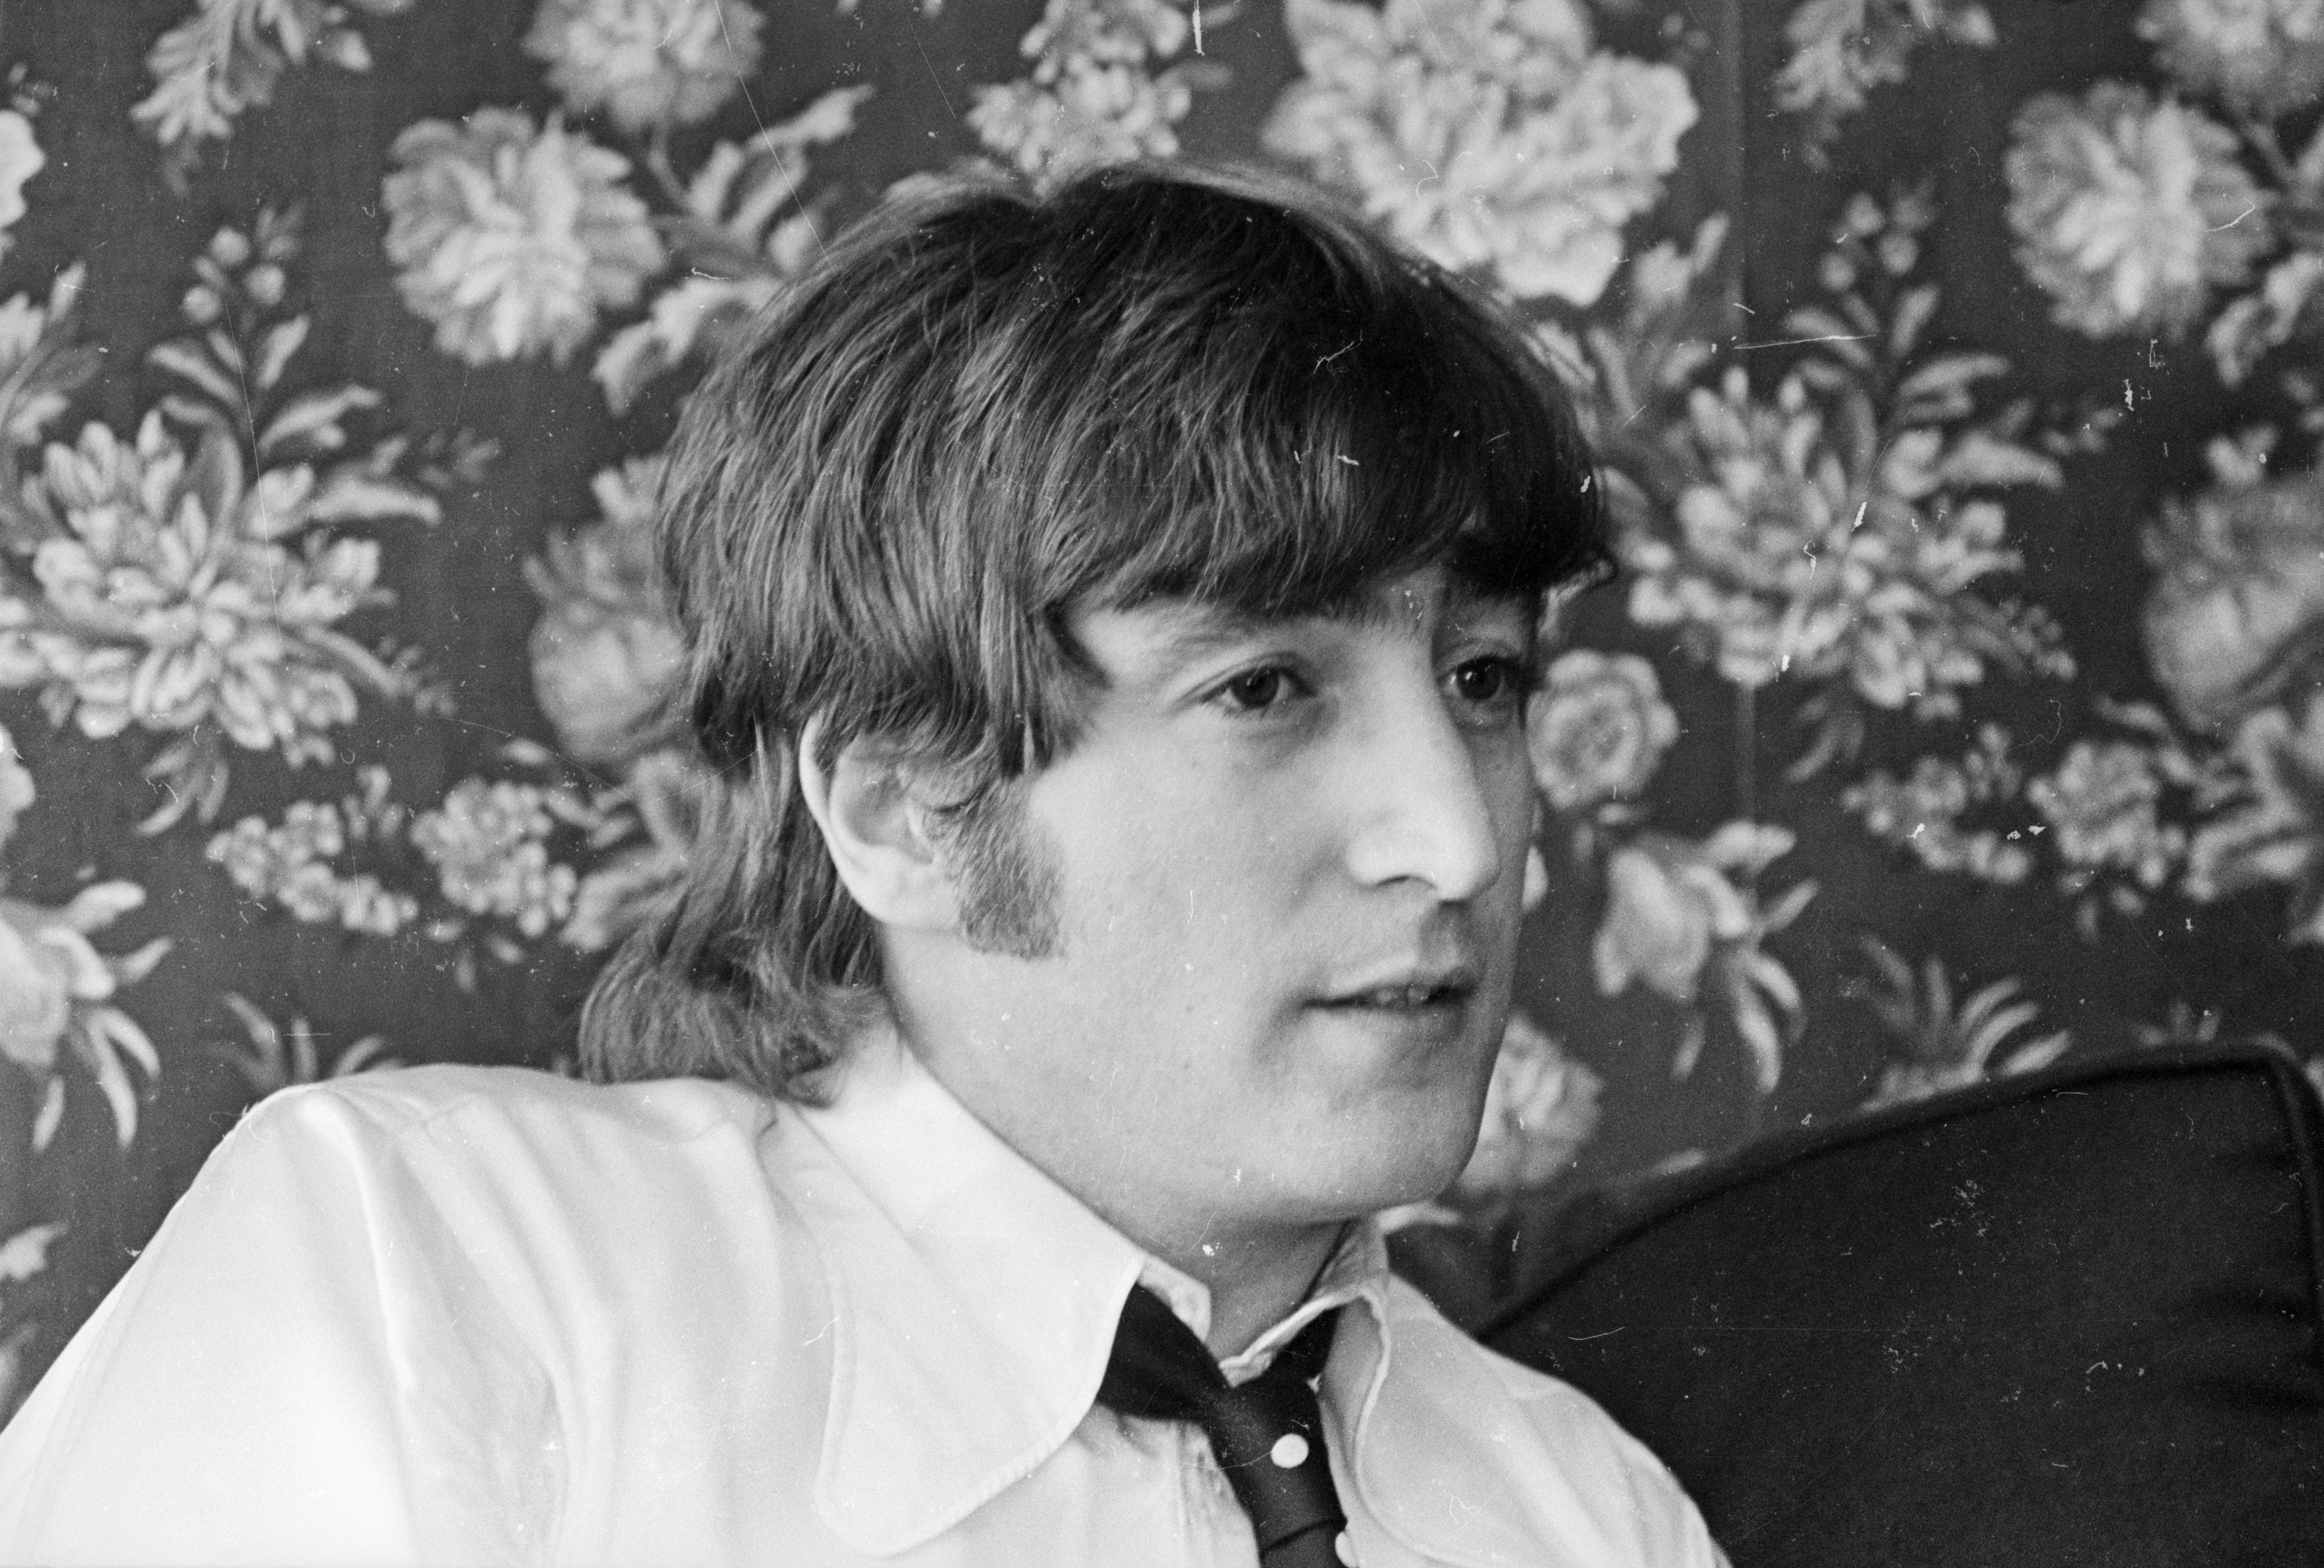 约翰·列侬把加入披头士比作被钉在十字架上